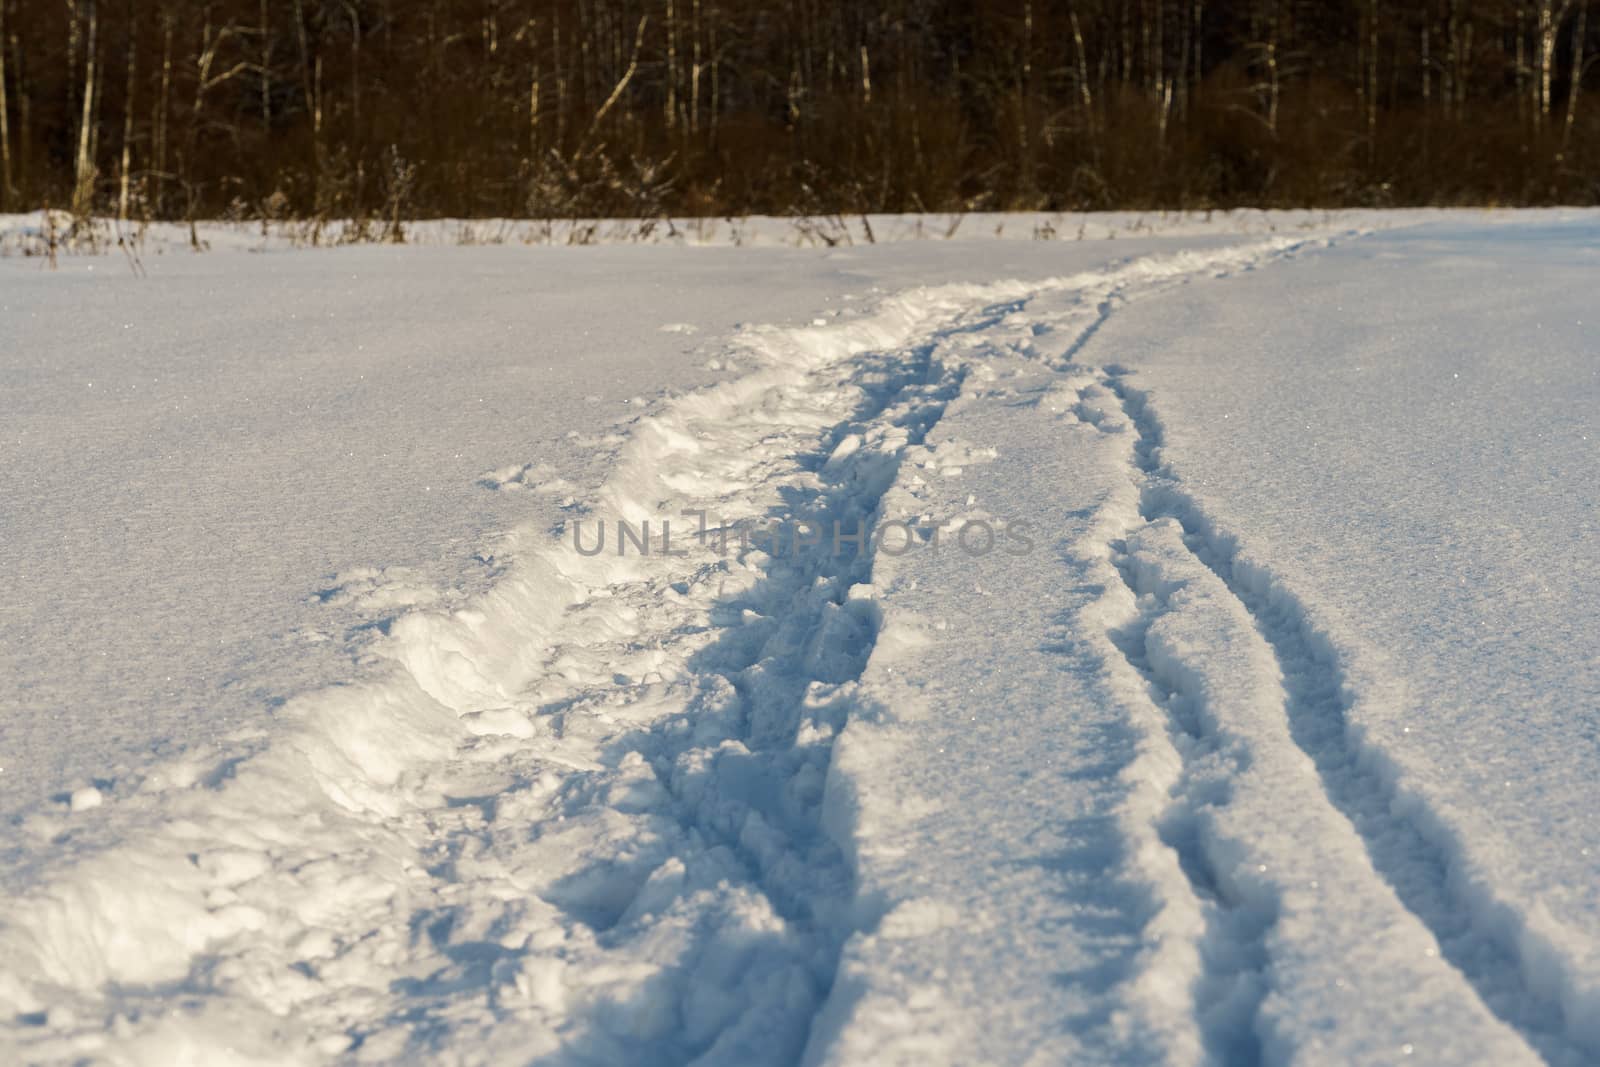 Path in a snowy field, rural winter landscape